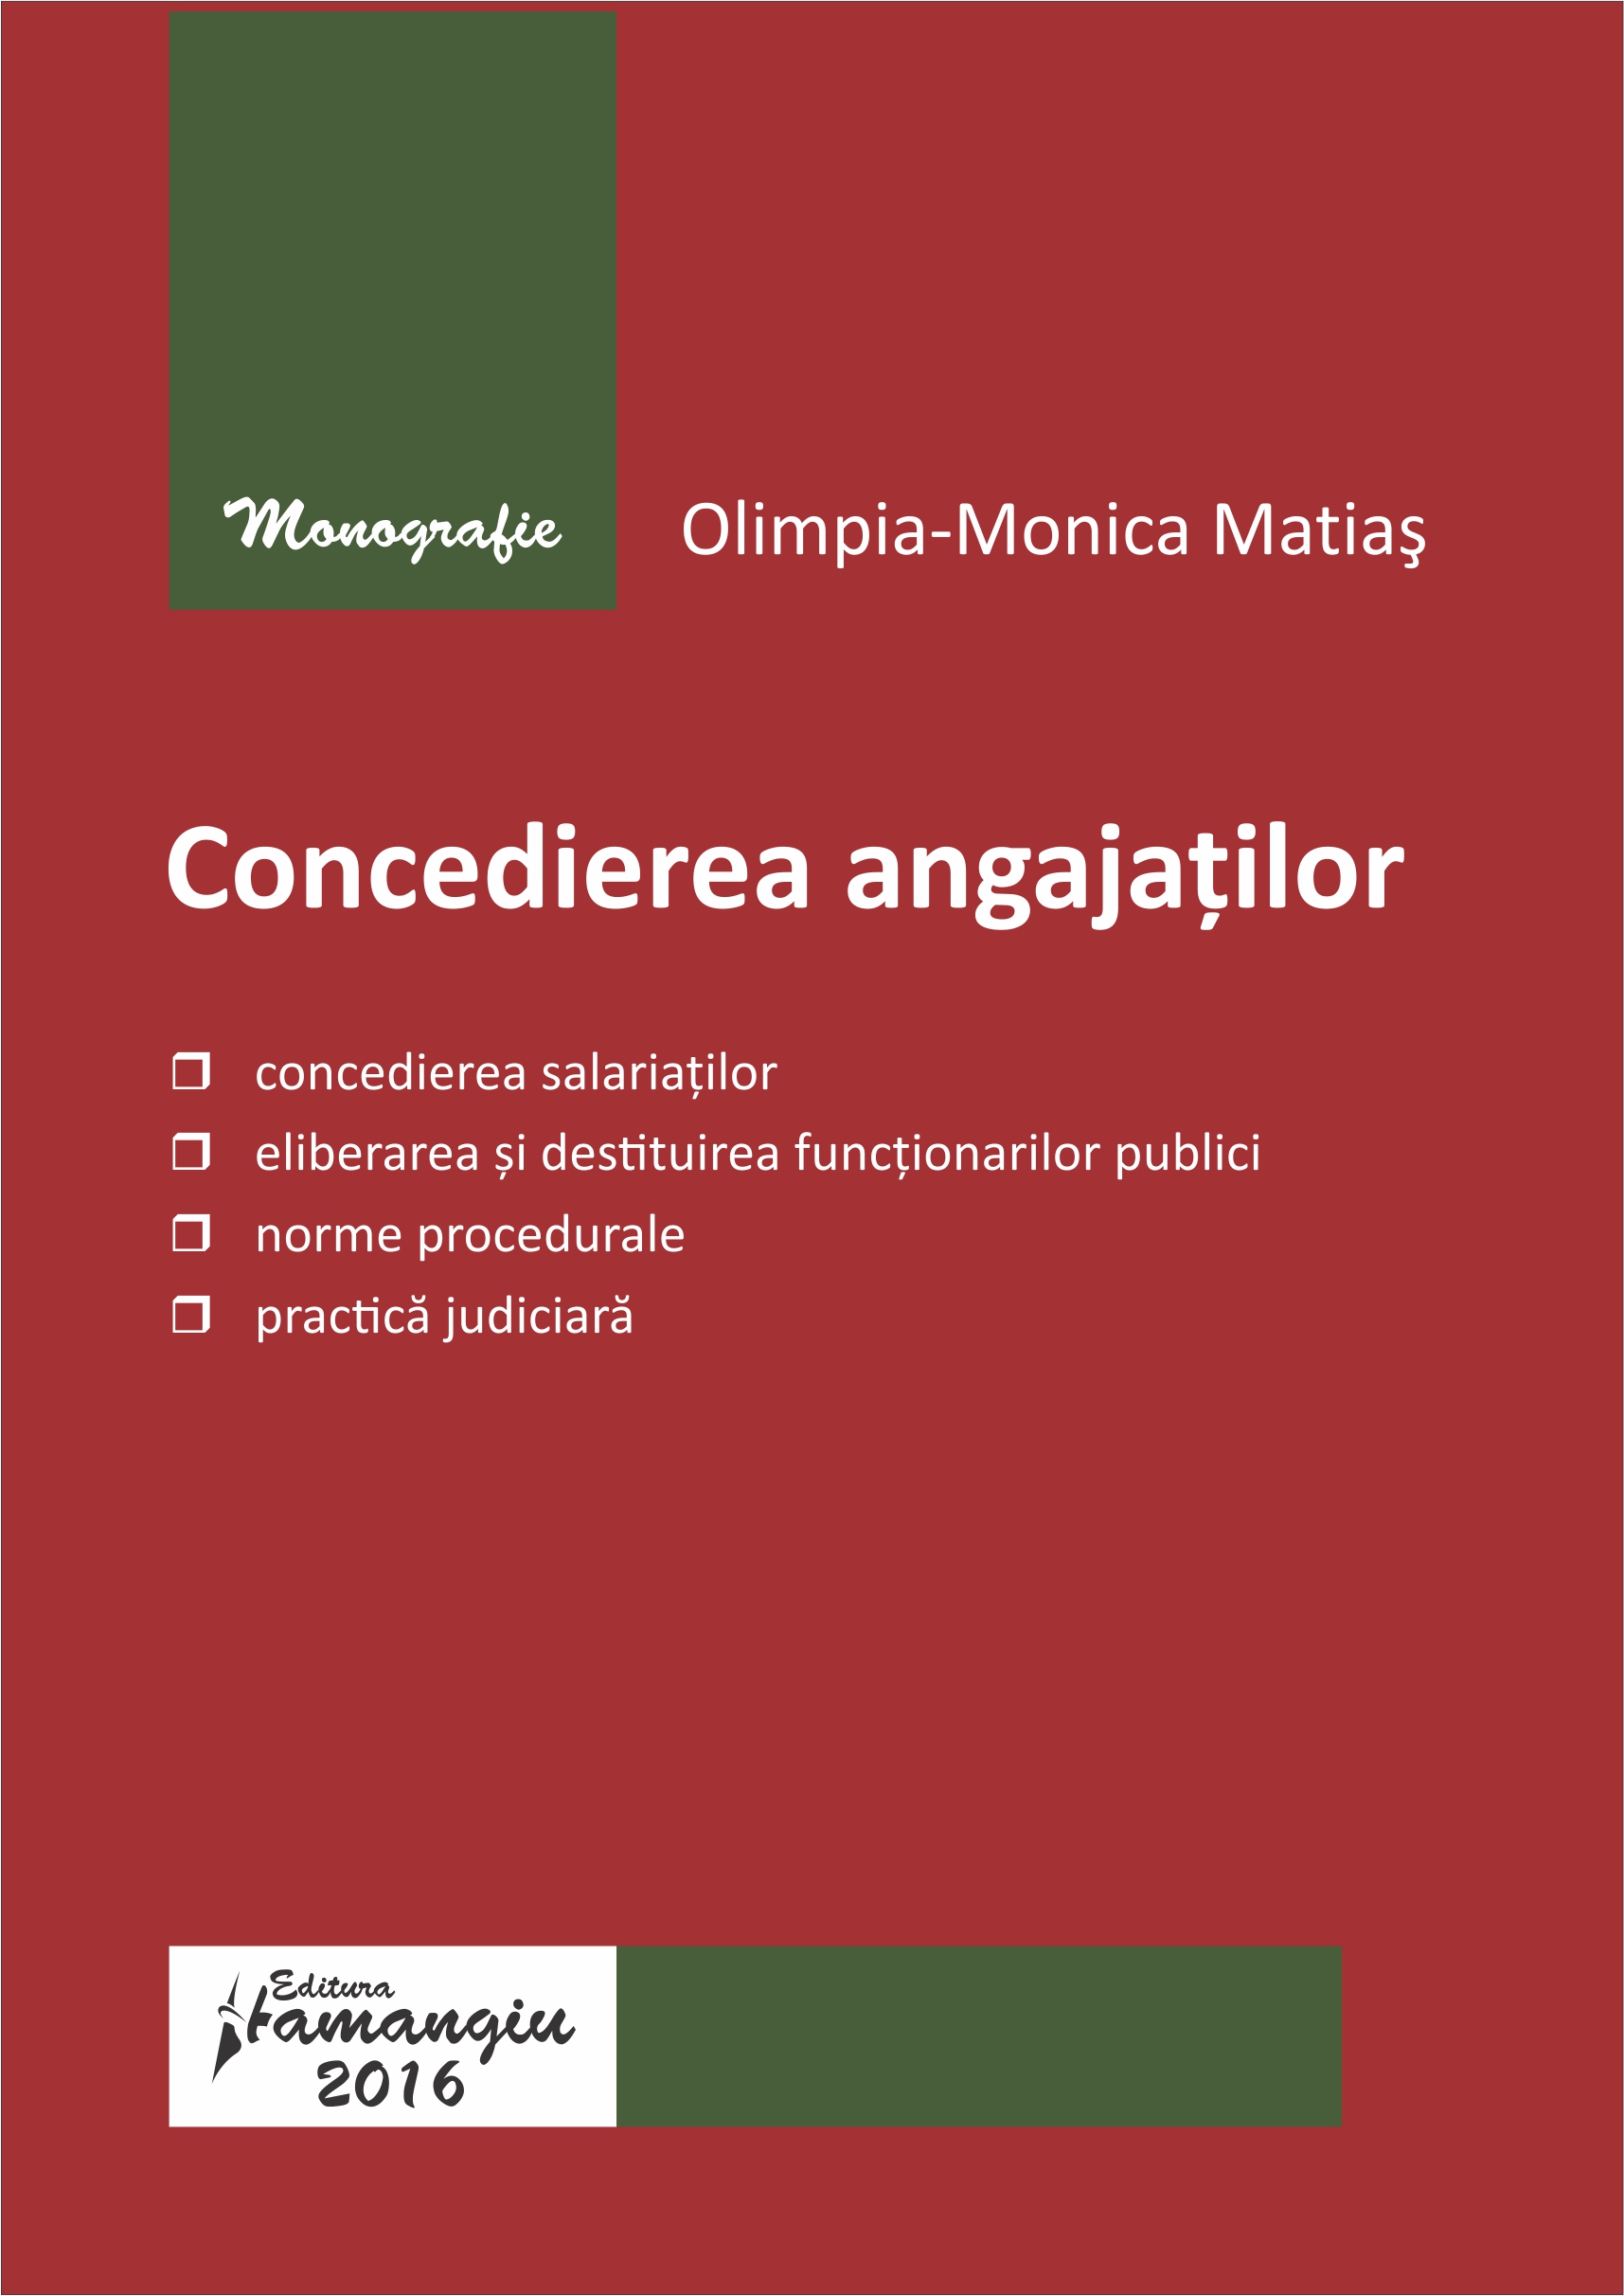 Concedierea angajatilor - Olimpia-Monica Matias